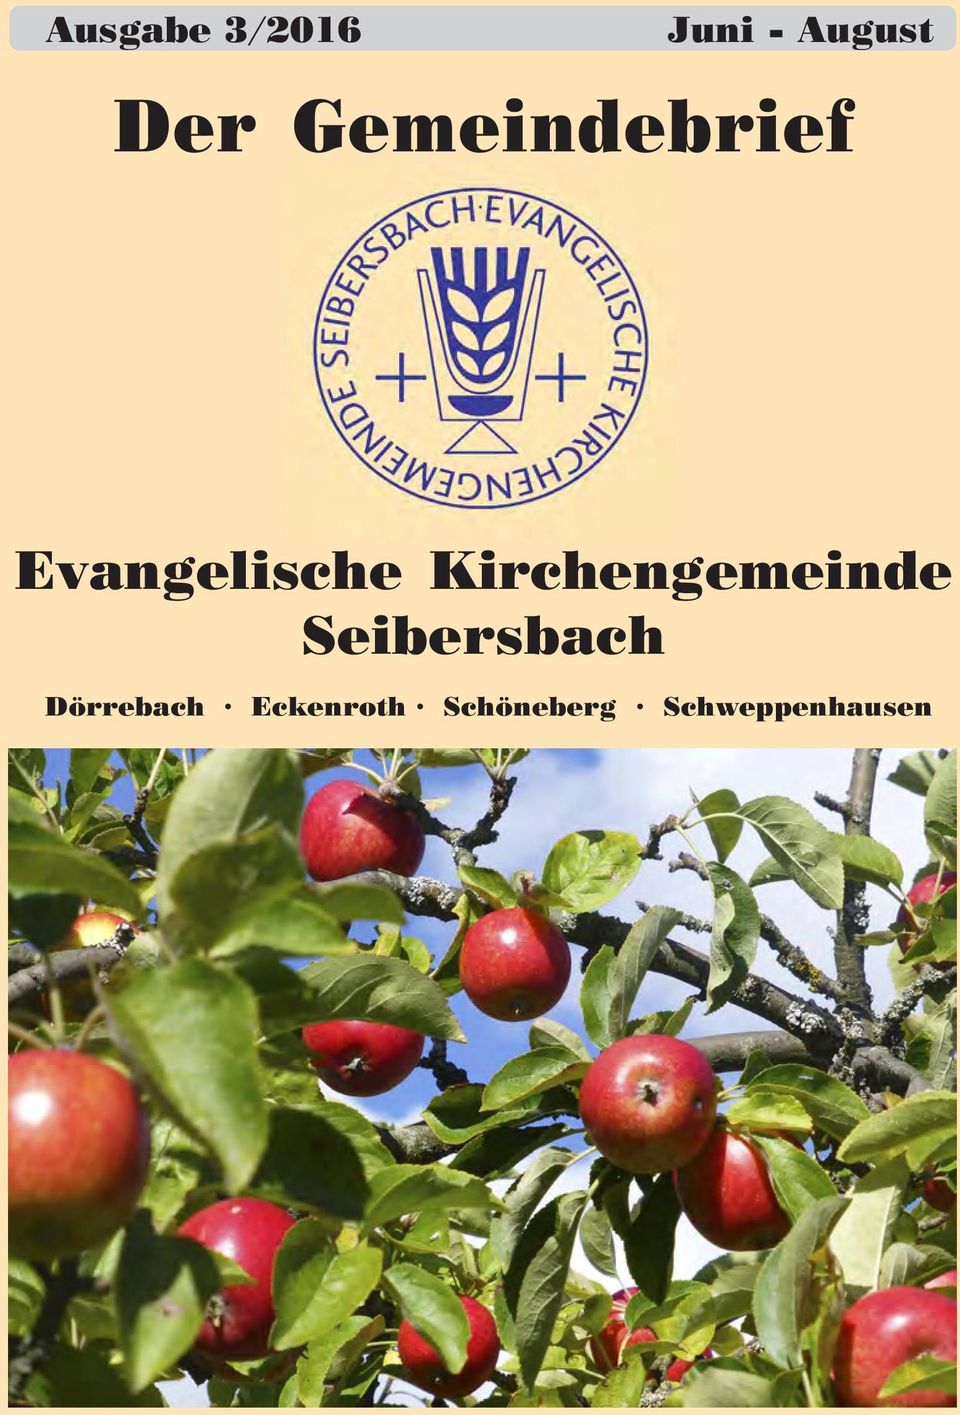 Kirchengemeinde Seibersbach